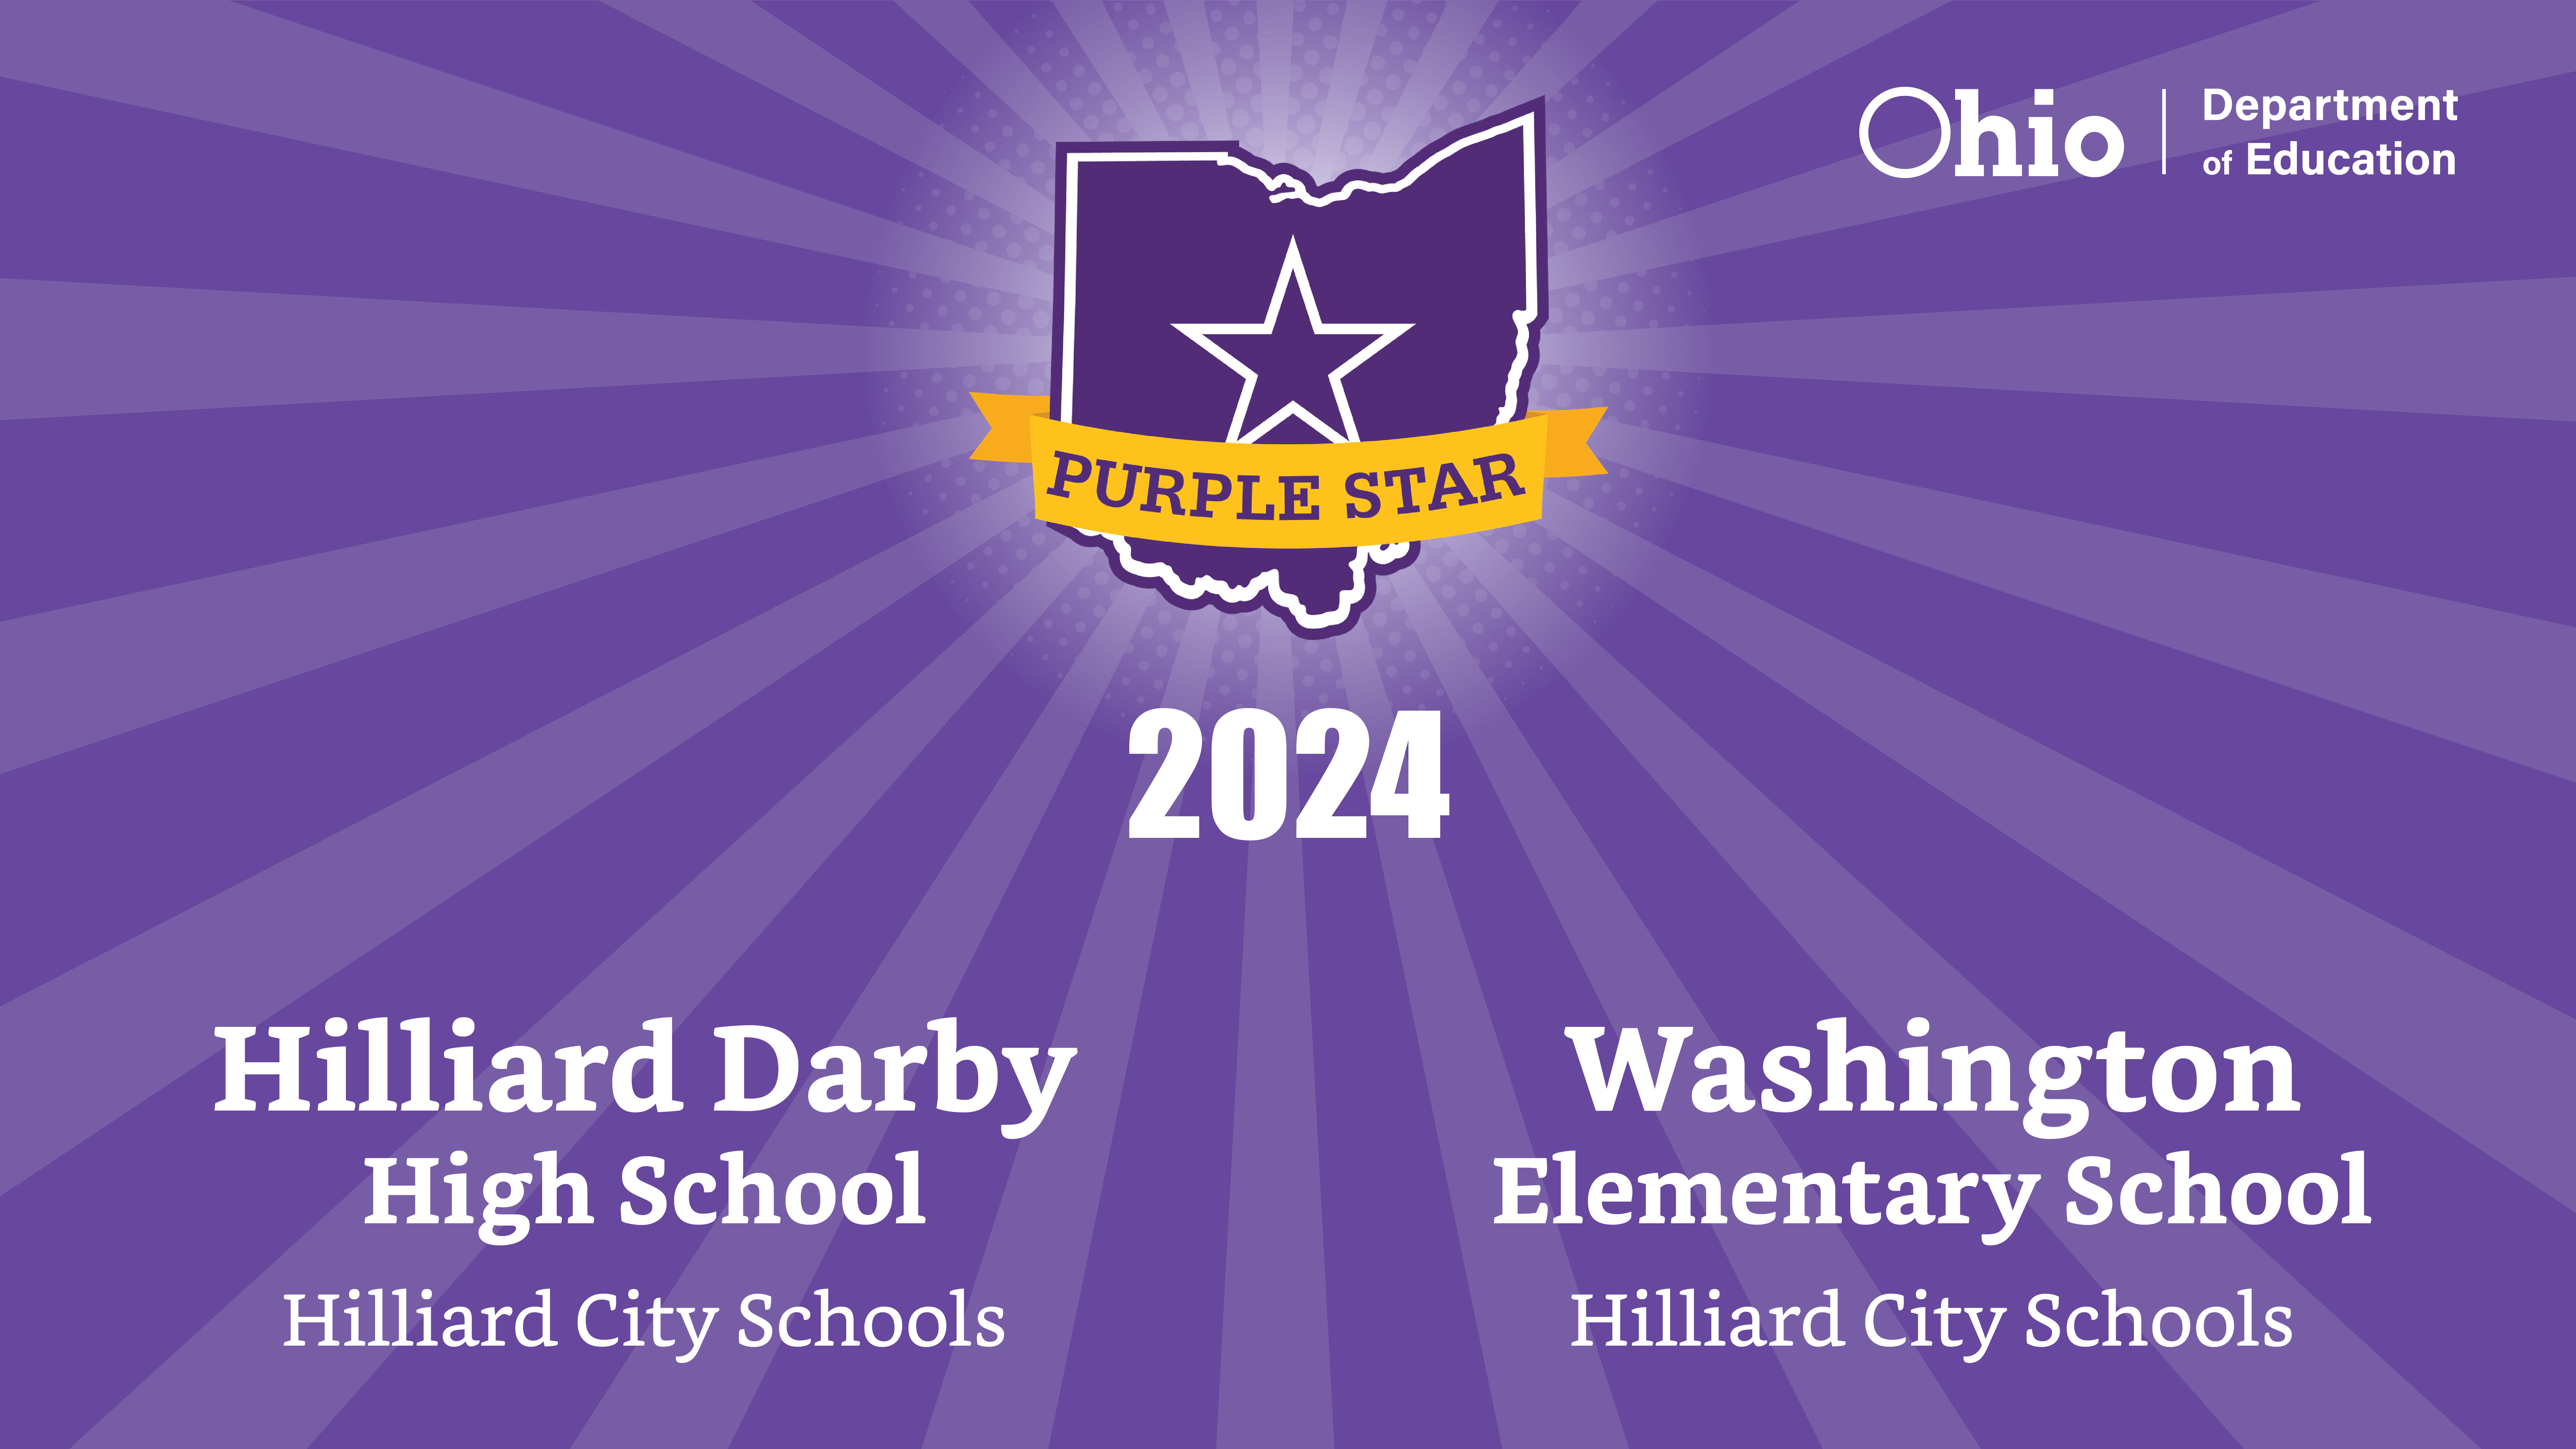 Purple Star Award (2024)